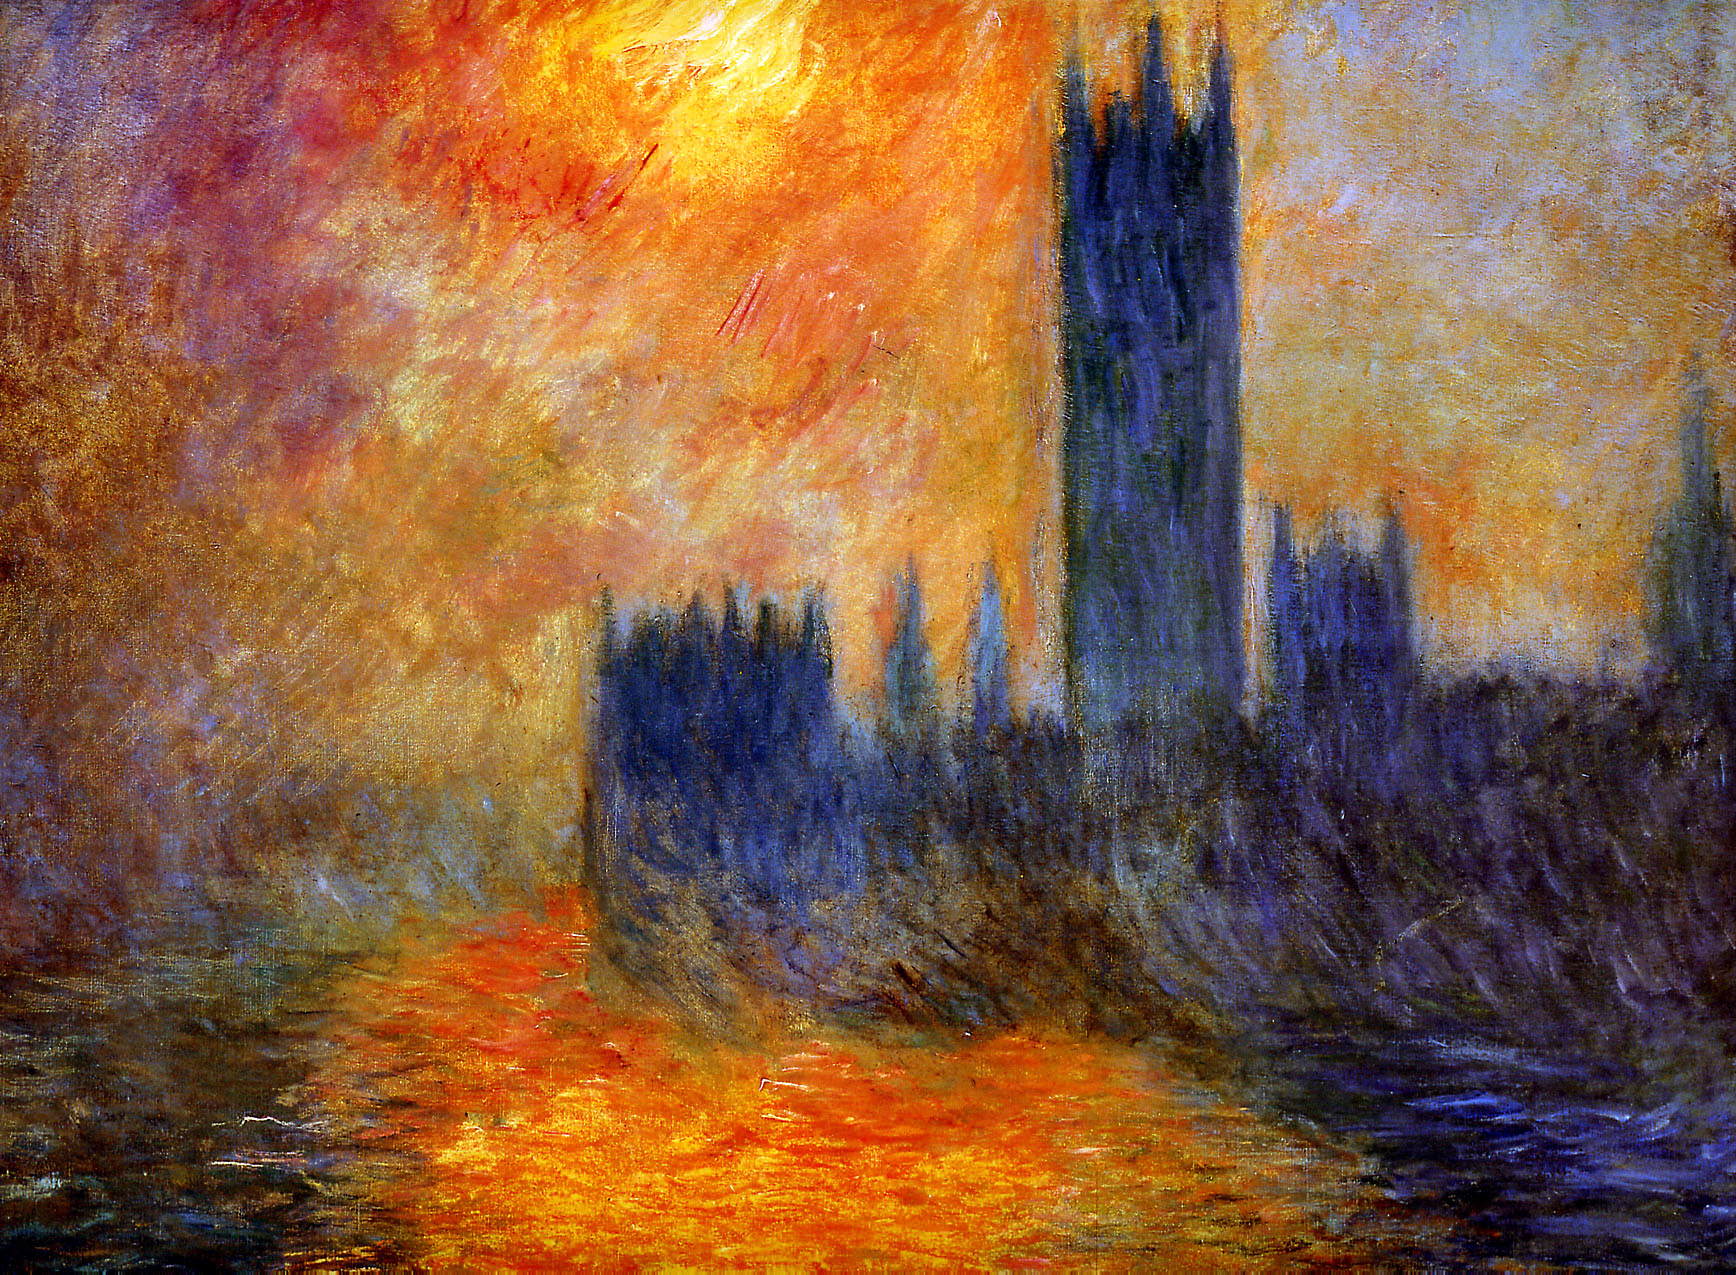 Londen, parlementsgebouwen. De zon dringt door de mist by Claude Monet - 1904 - 81 cm x 92 cm 